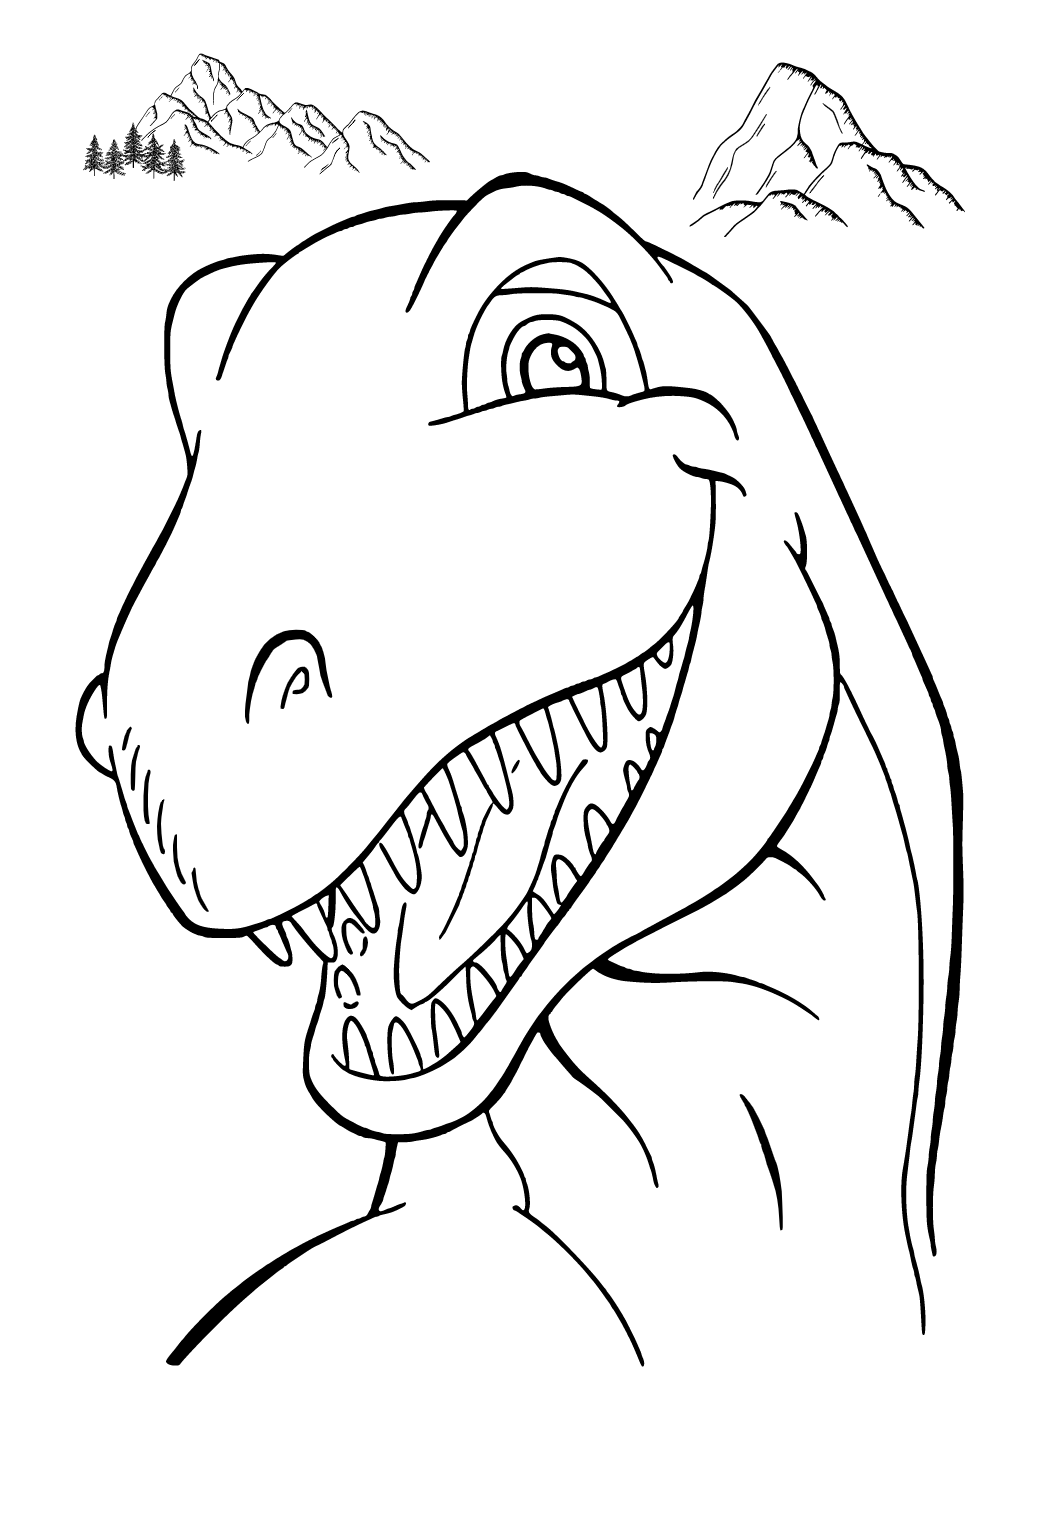 Desenhos e Imagens Dinossauro para Colorir e Imprimir Grátis para